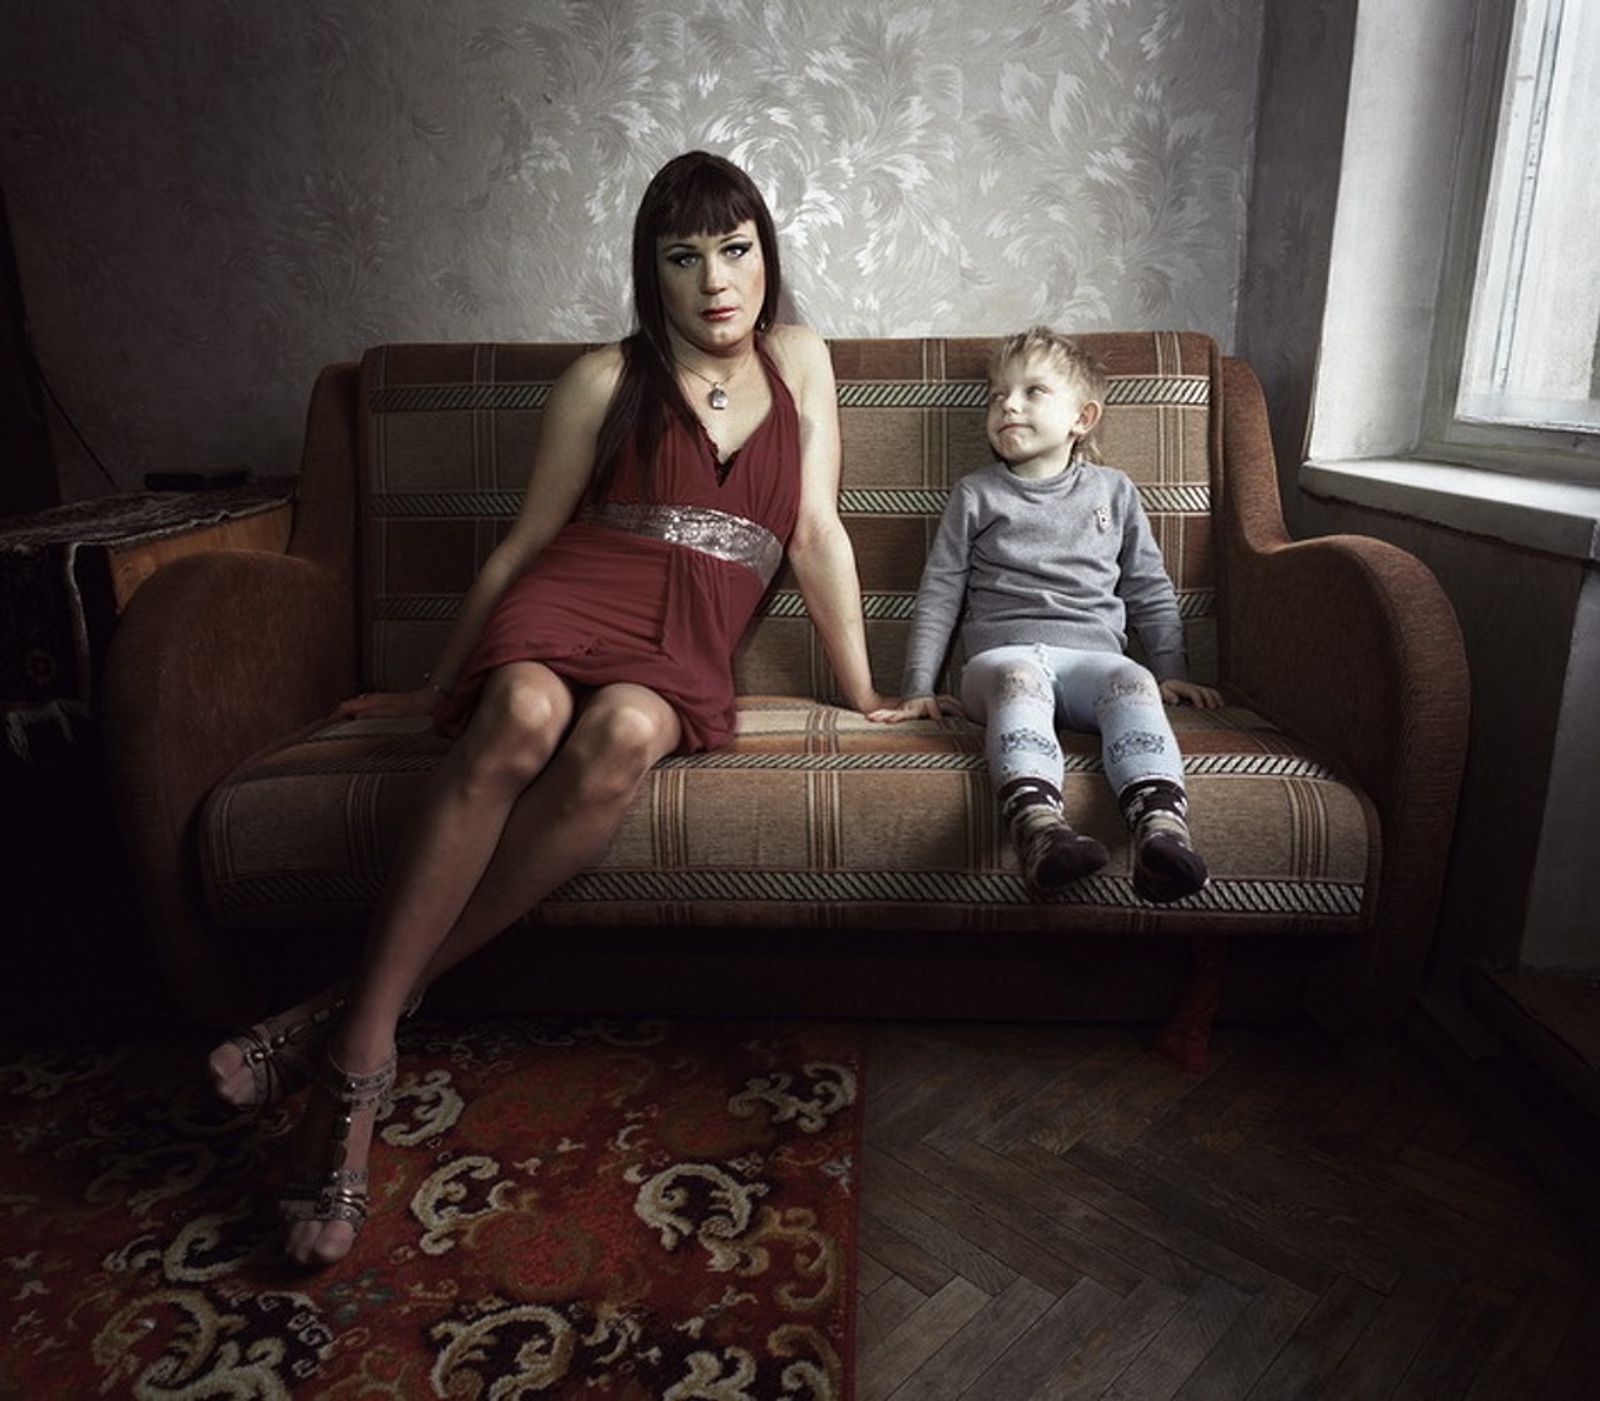 © Tatiana Ilina - Image from the Transvestites photography project